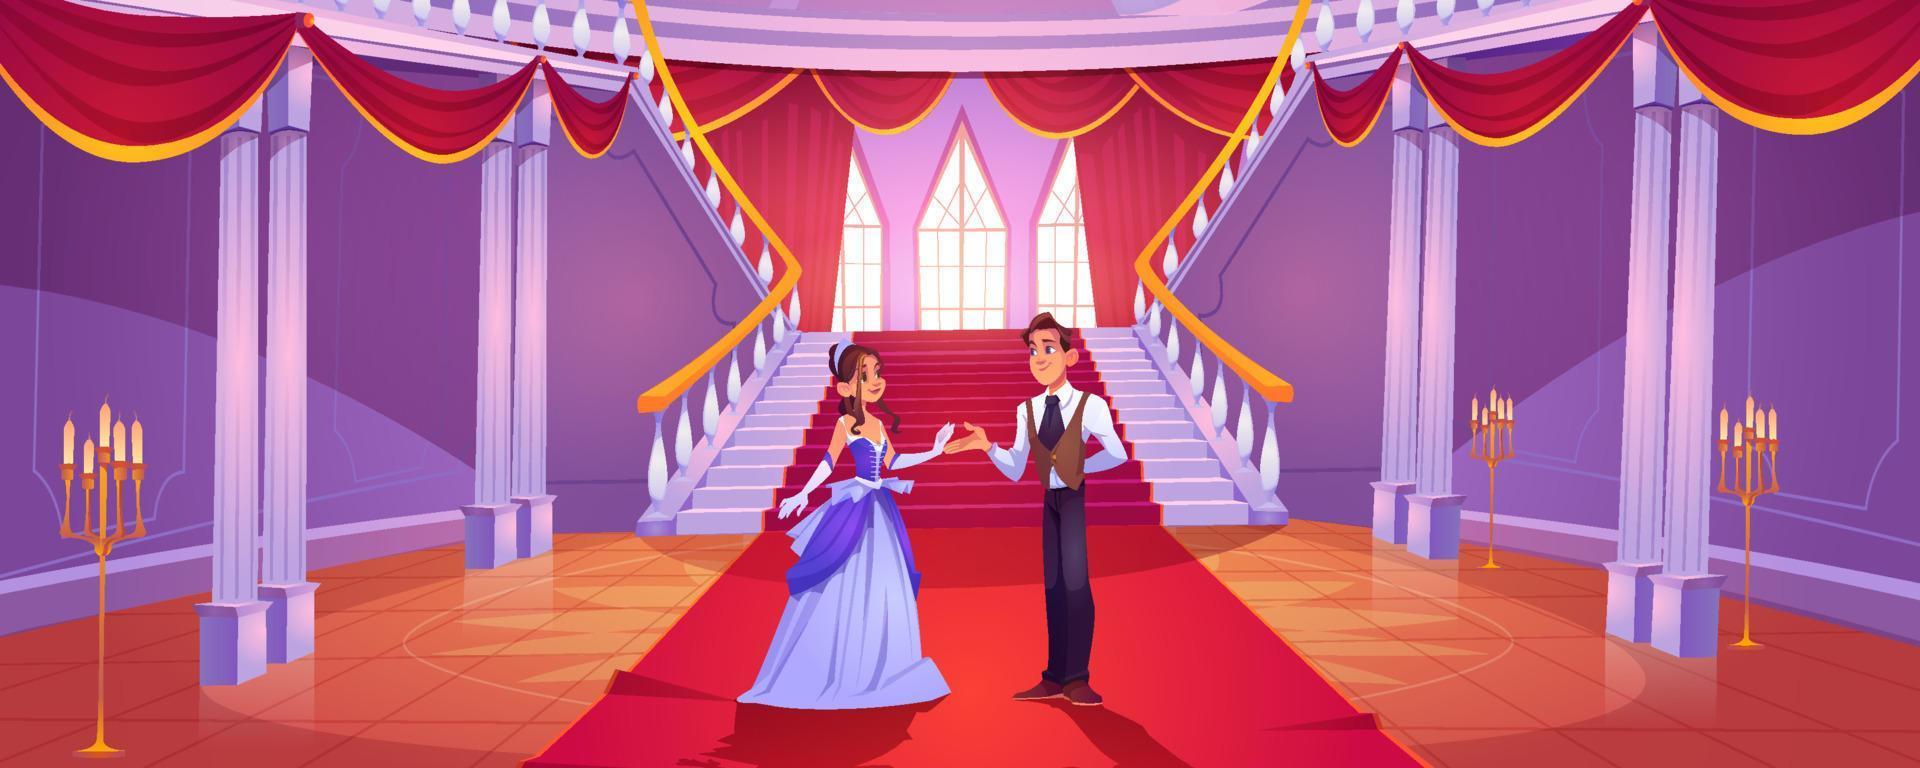 Prinz und Prinzessin im königlichen Schlosssaal vektor